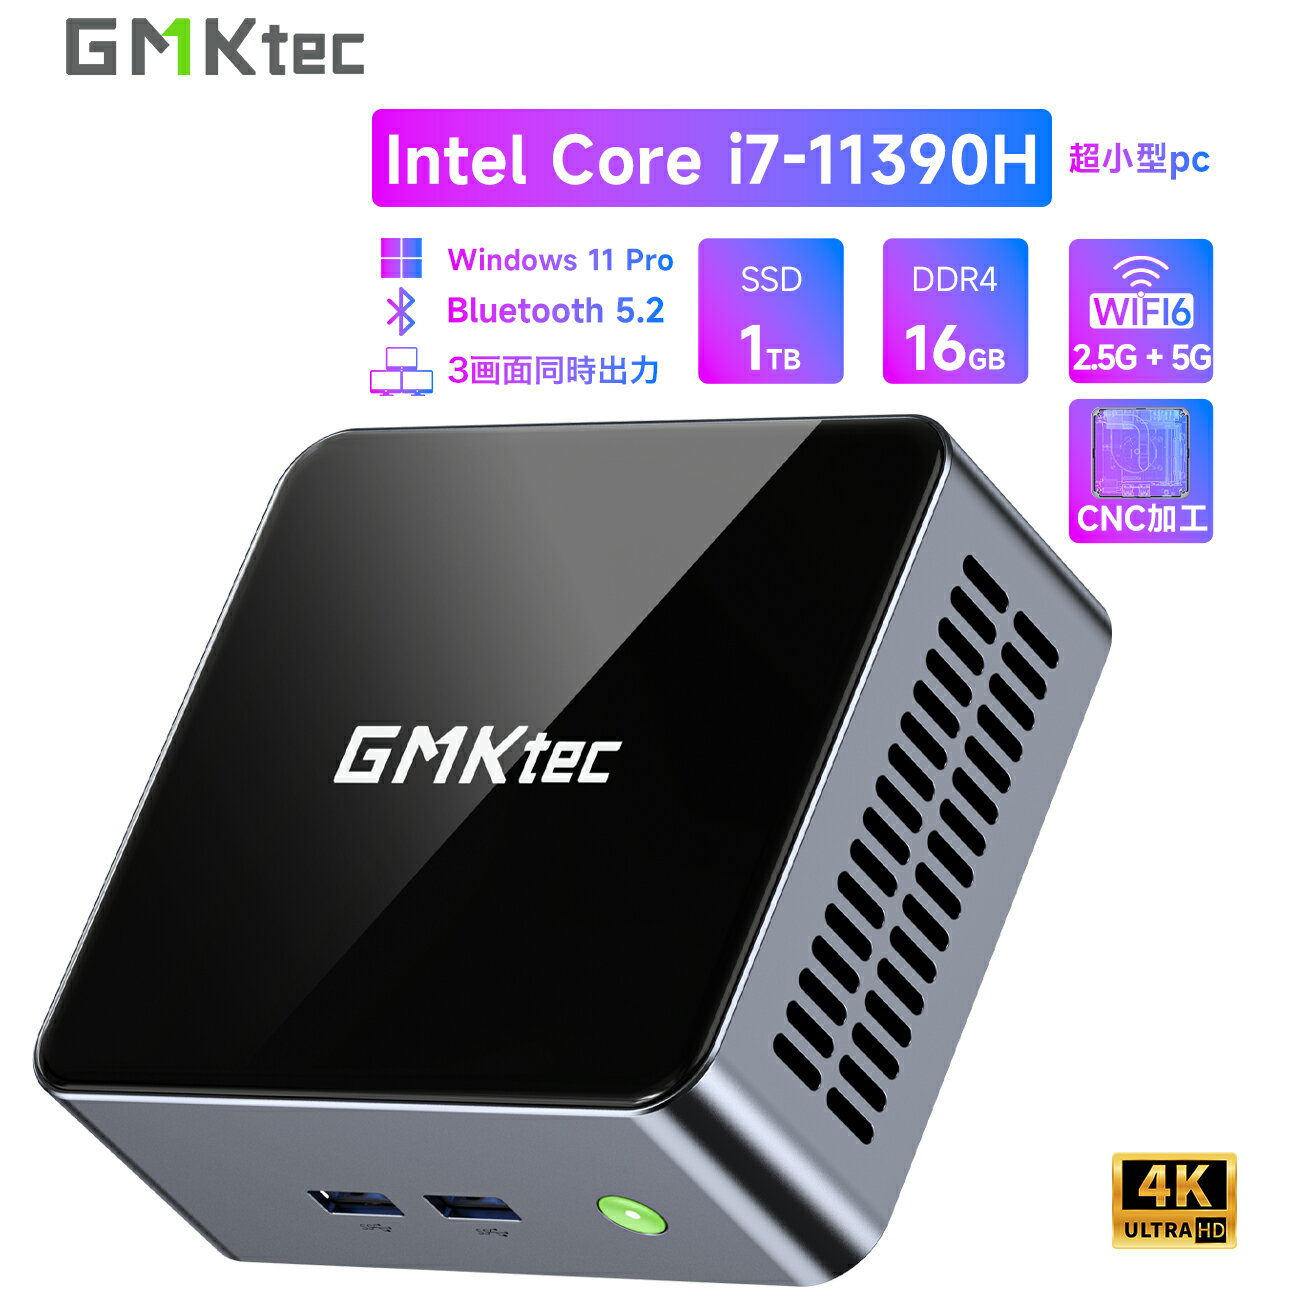 【先着100名限定15 OFF 5/19 23:59迄】GMKtec m2【ミニPC intel Core i7-11390H (ターボ 5.0 GHz) 1TB SSD 16GB DDR4】 Windows11 Pro WiFi6 USB3.2 BT 5.2 DP HDMI RJ45 2.5G インテル 4K 2画面出力 デスクトップ パソコン pc minipc 12ヶ月安心保証 レビュープレゼント